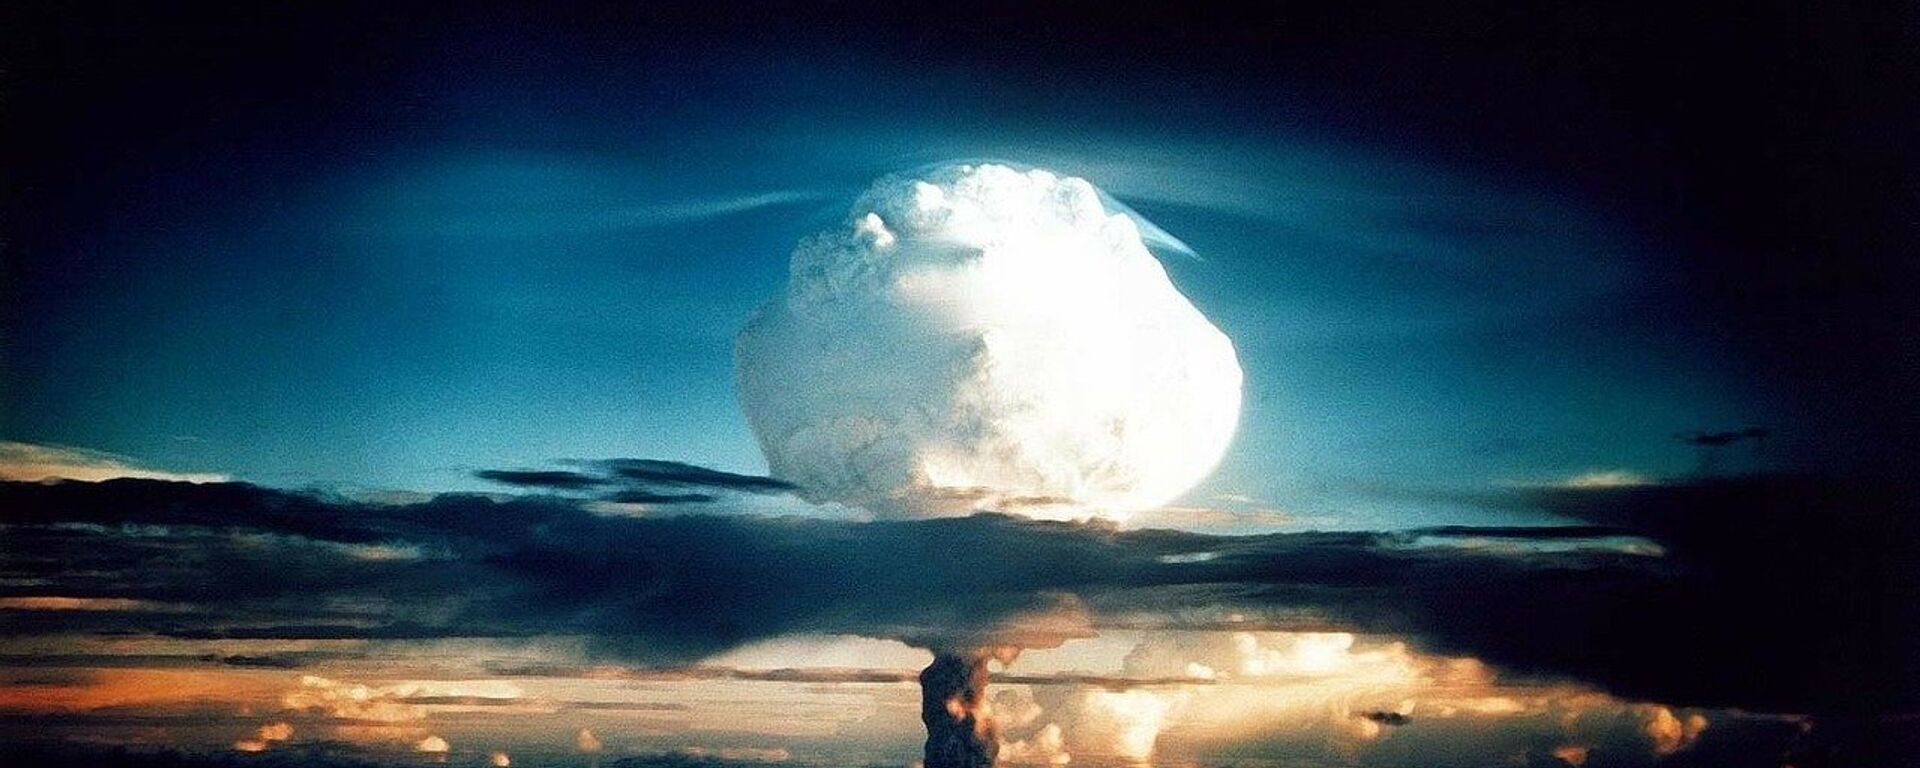 Explosión nuclear (imagen referencial) - Sputnik Mundo, 1920, 07.10.2019